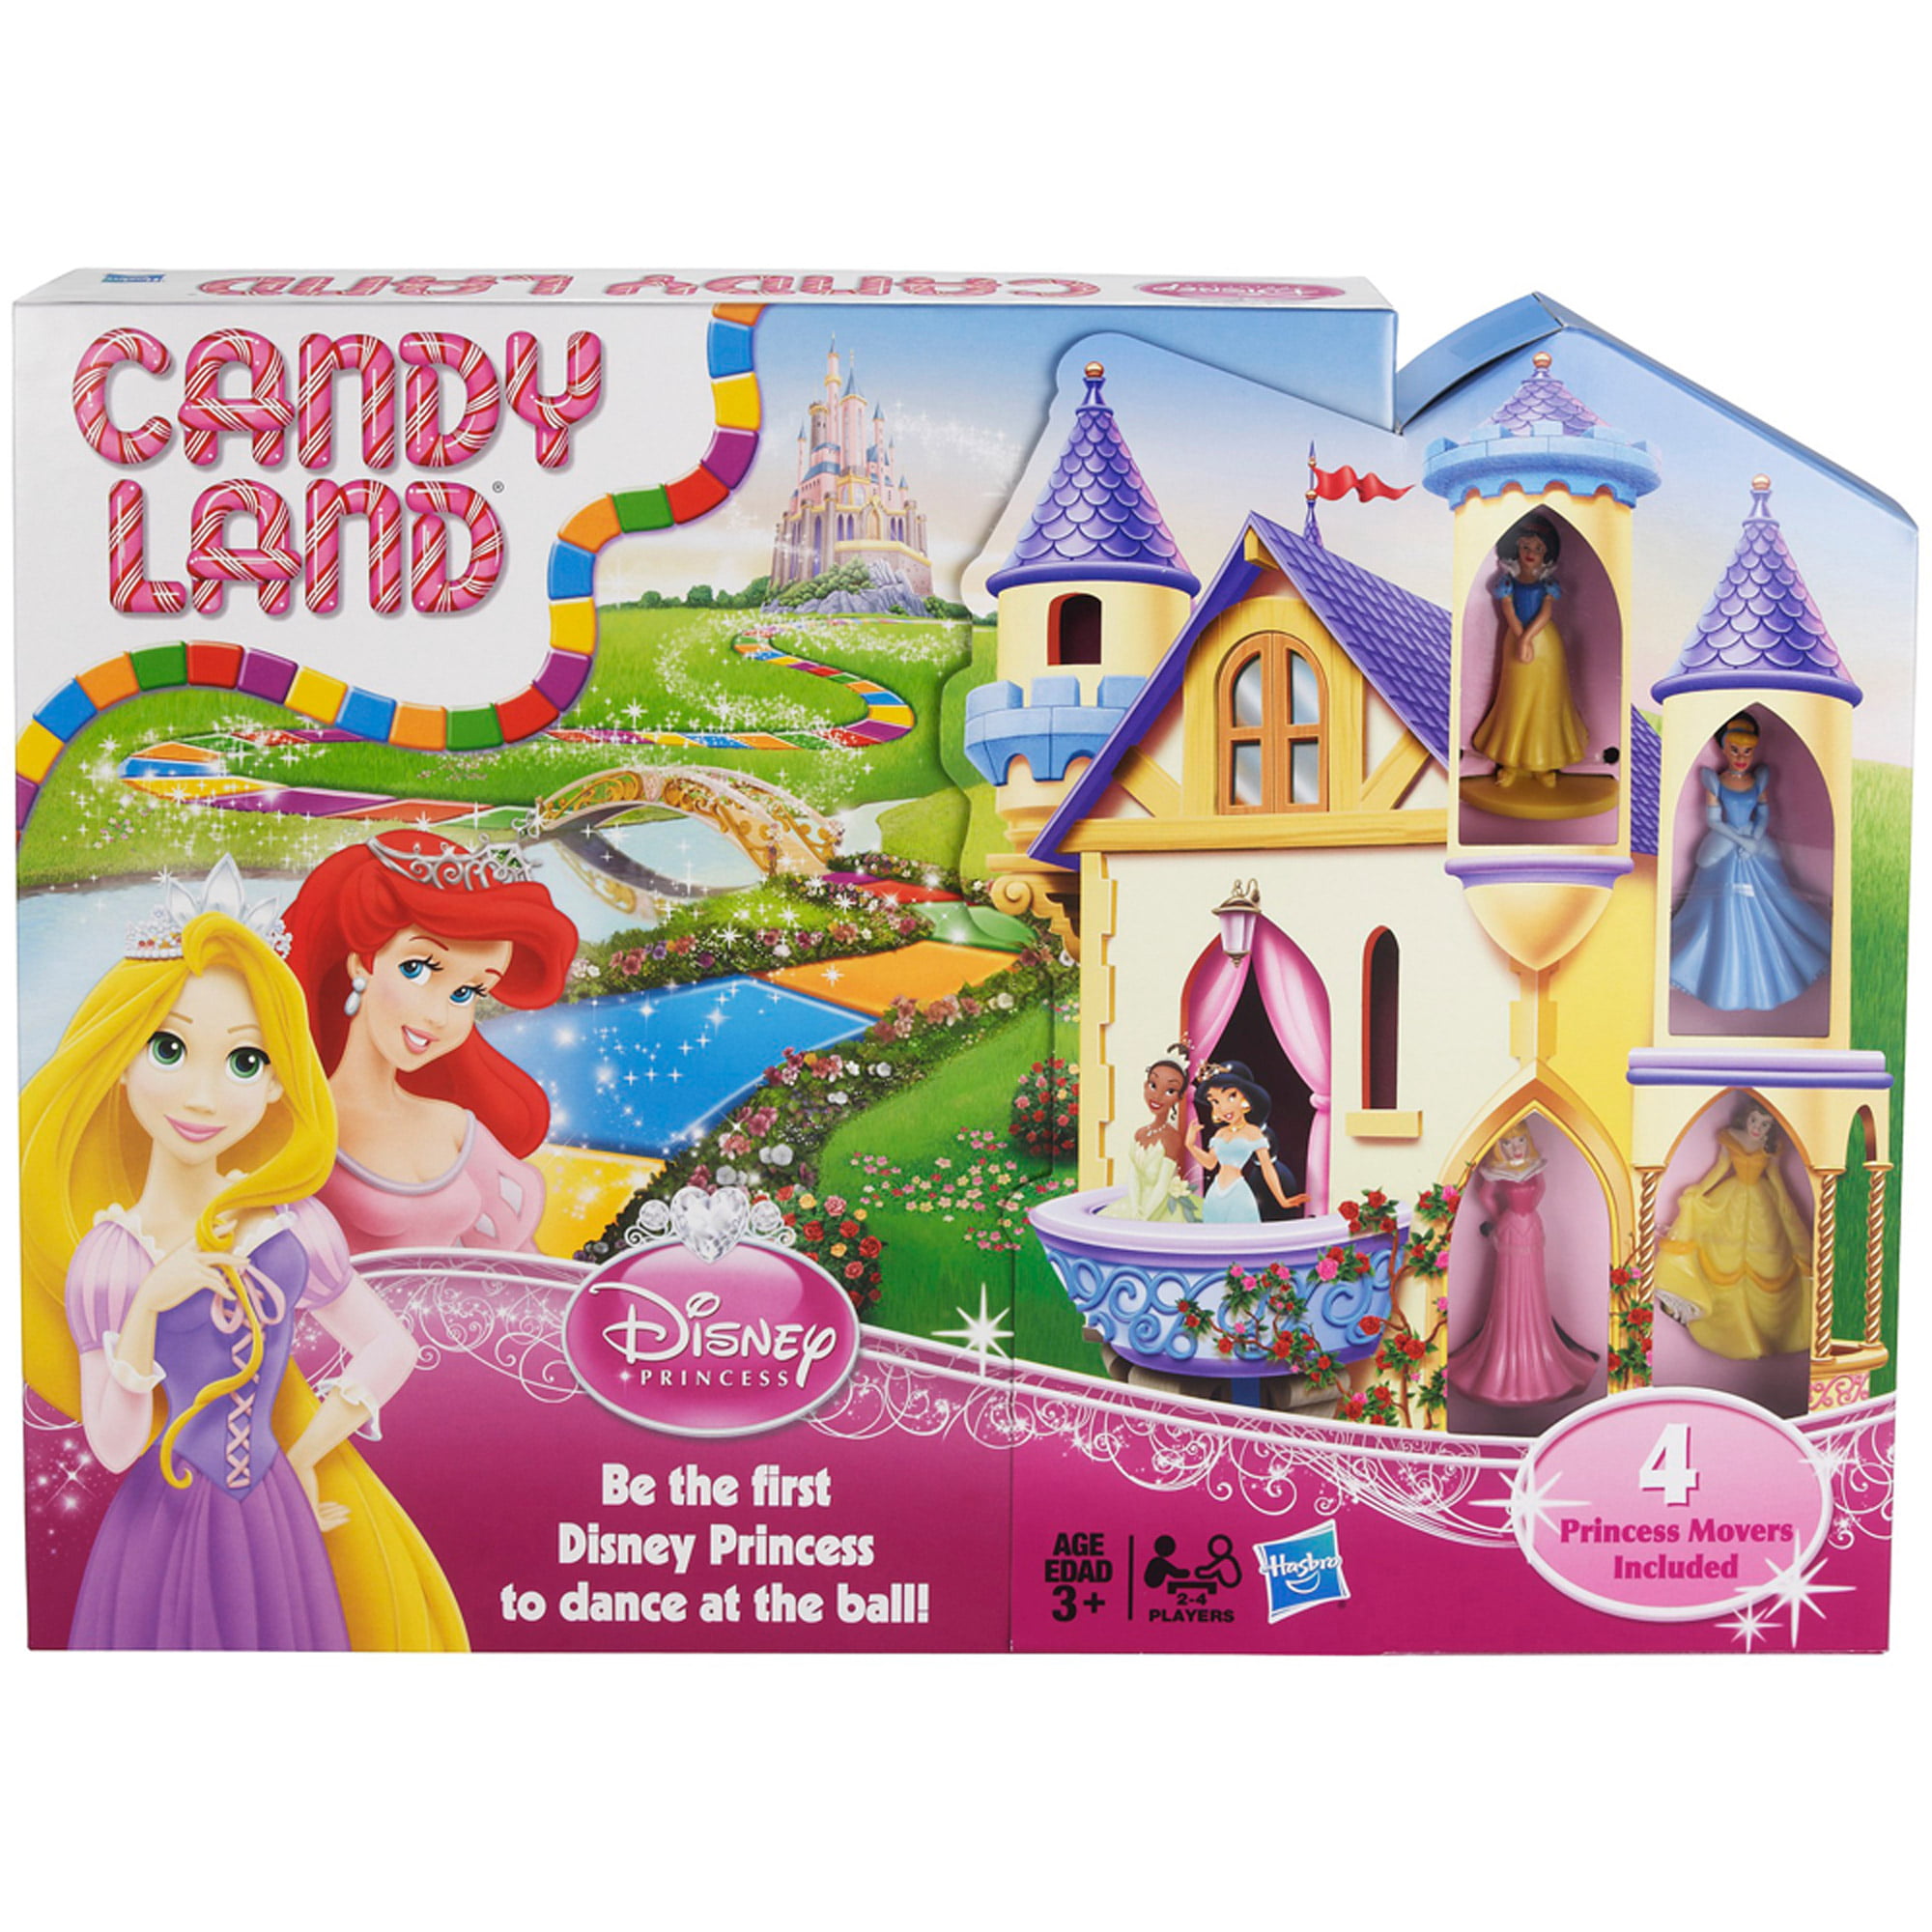 Disney Princess Xxx Redtube - Candy Land Disney Princess Edition, For 2 to 4 players - Walmart.com